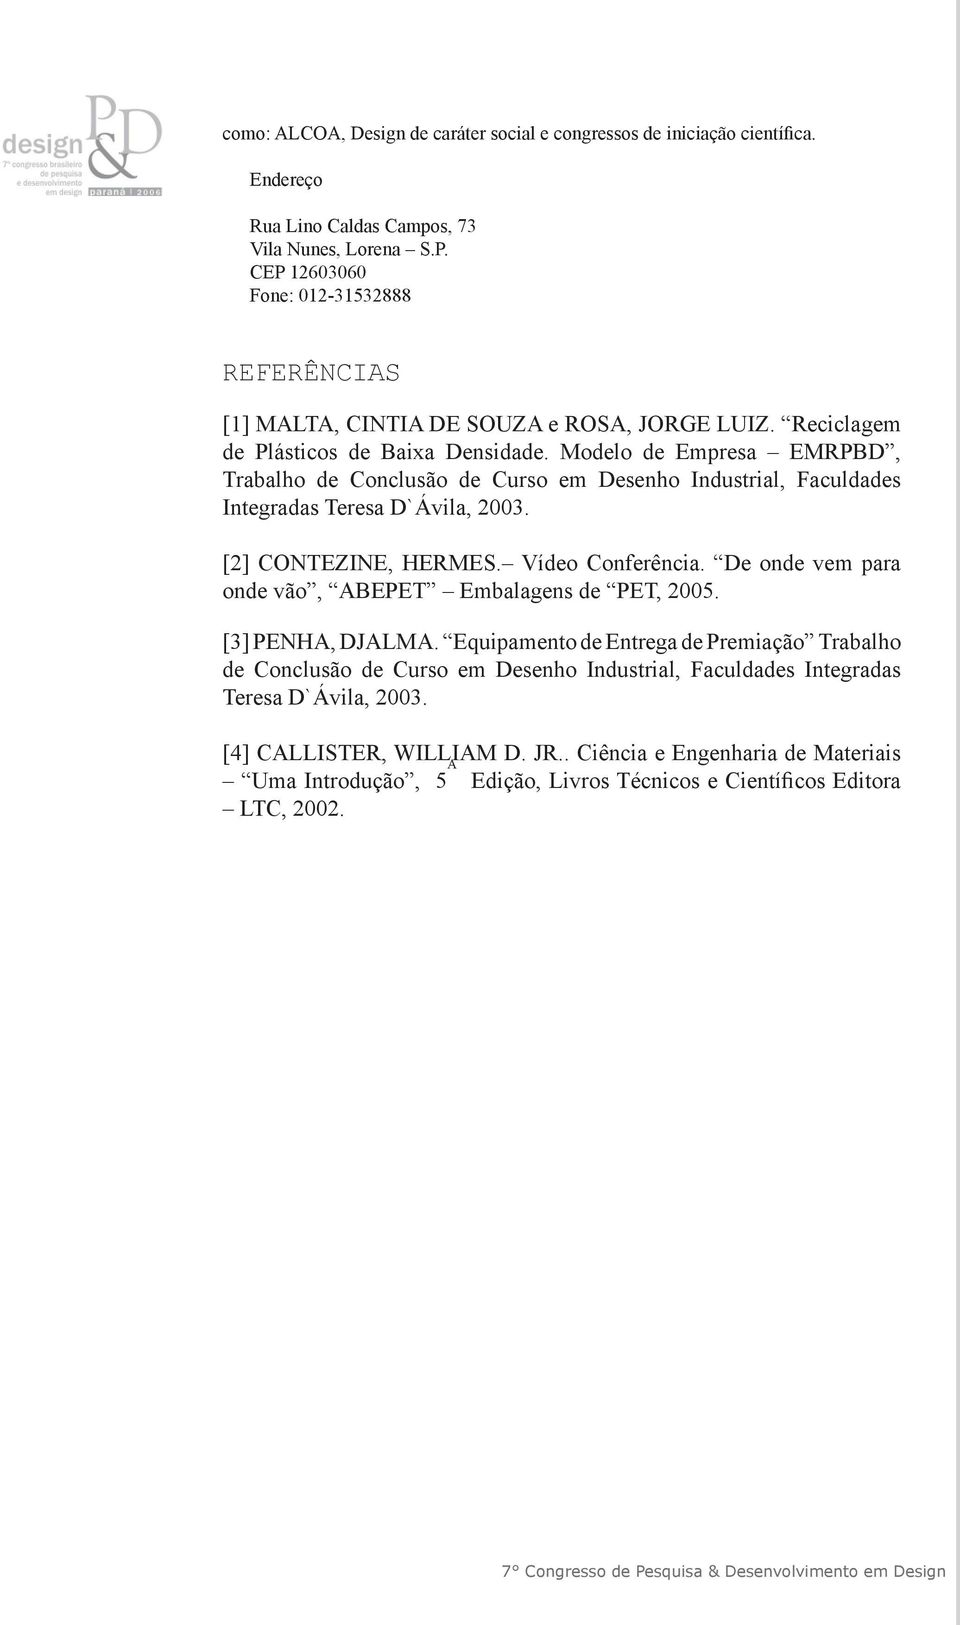 Modelo de Empresa EMRPBD, Trabalho de Conclusão de Curso em Desenho Industrial, Faculdades Integradas Teresa D`Ávila, 2003. [2] CONTEZINE, HERMES. Vídeo Conferência.